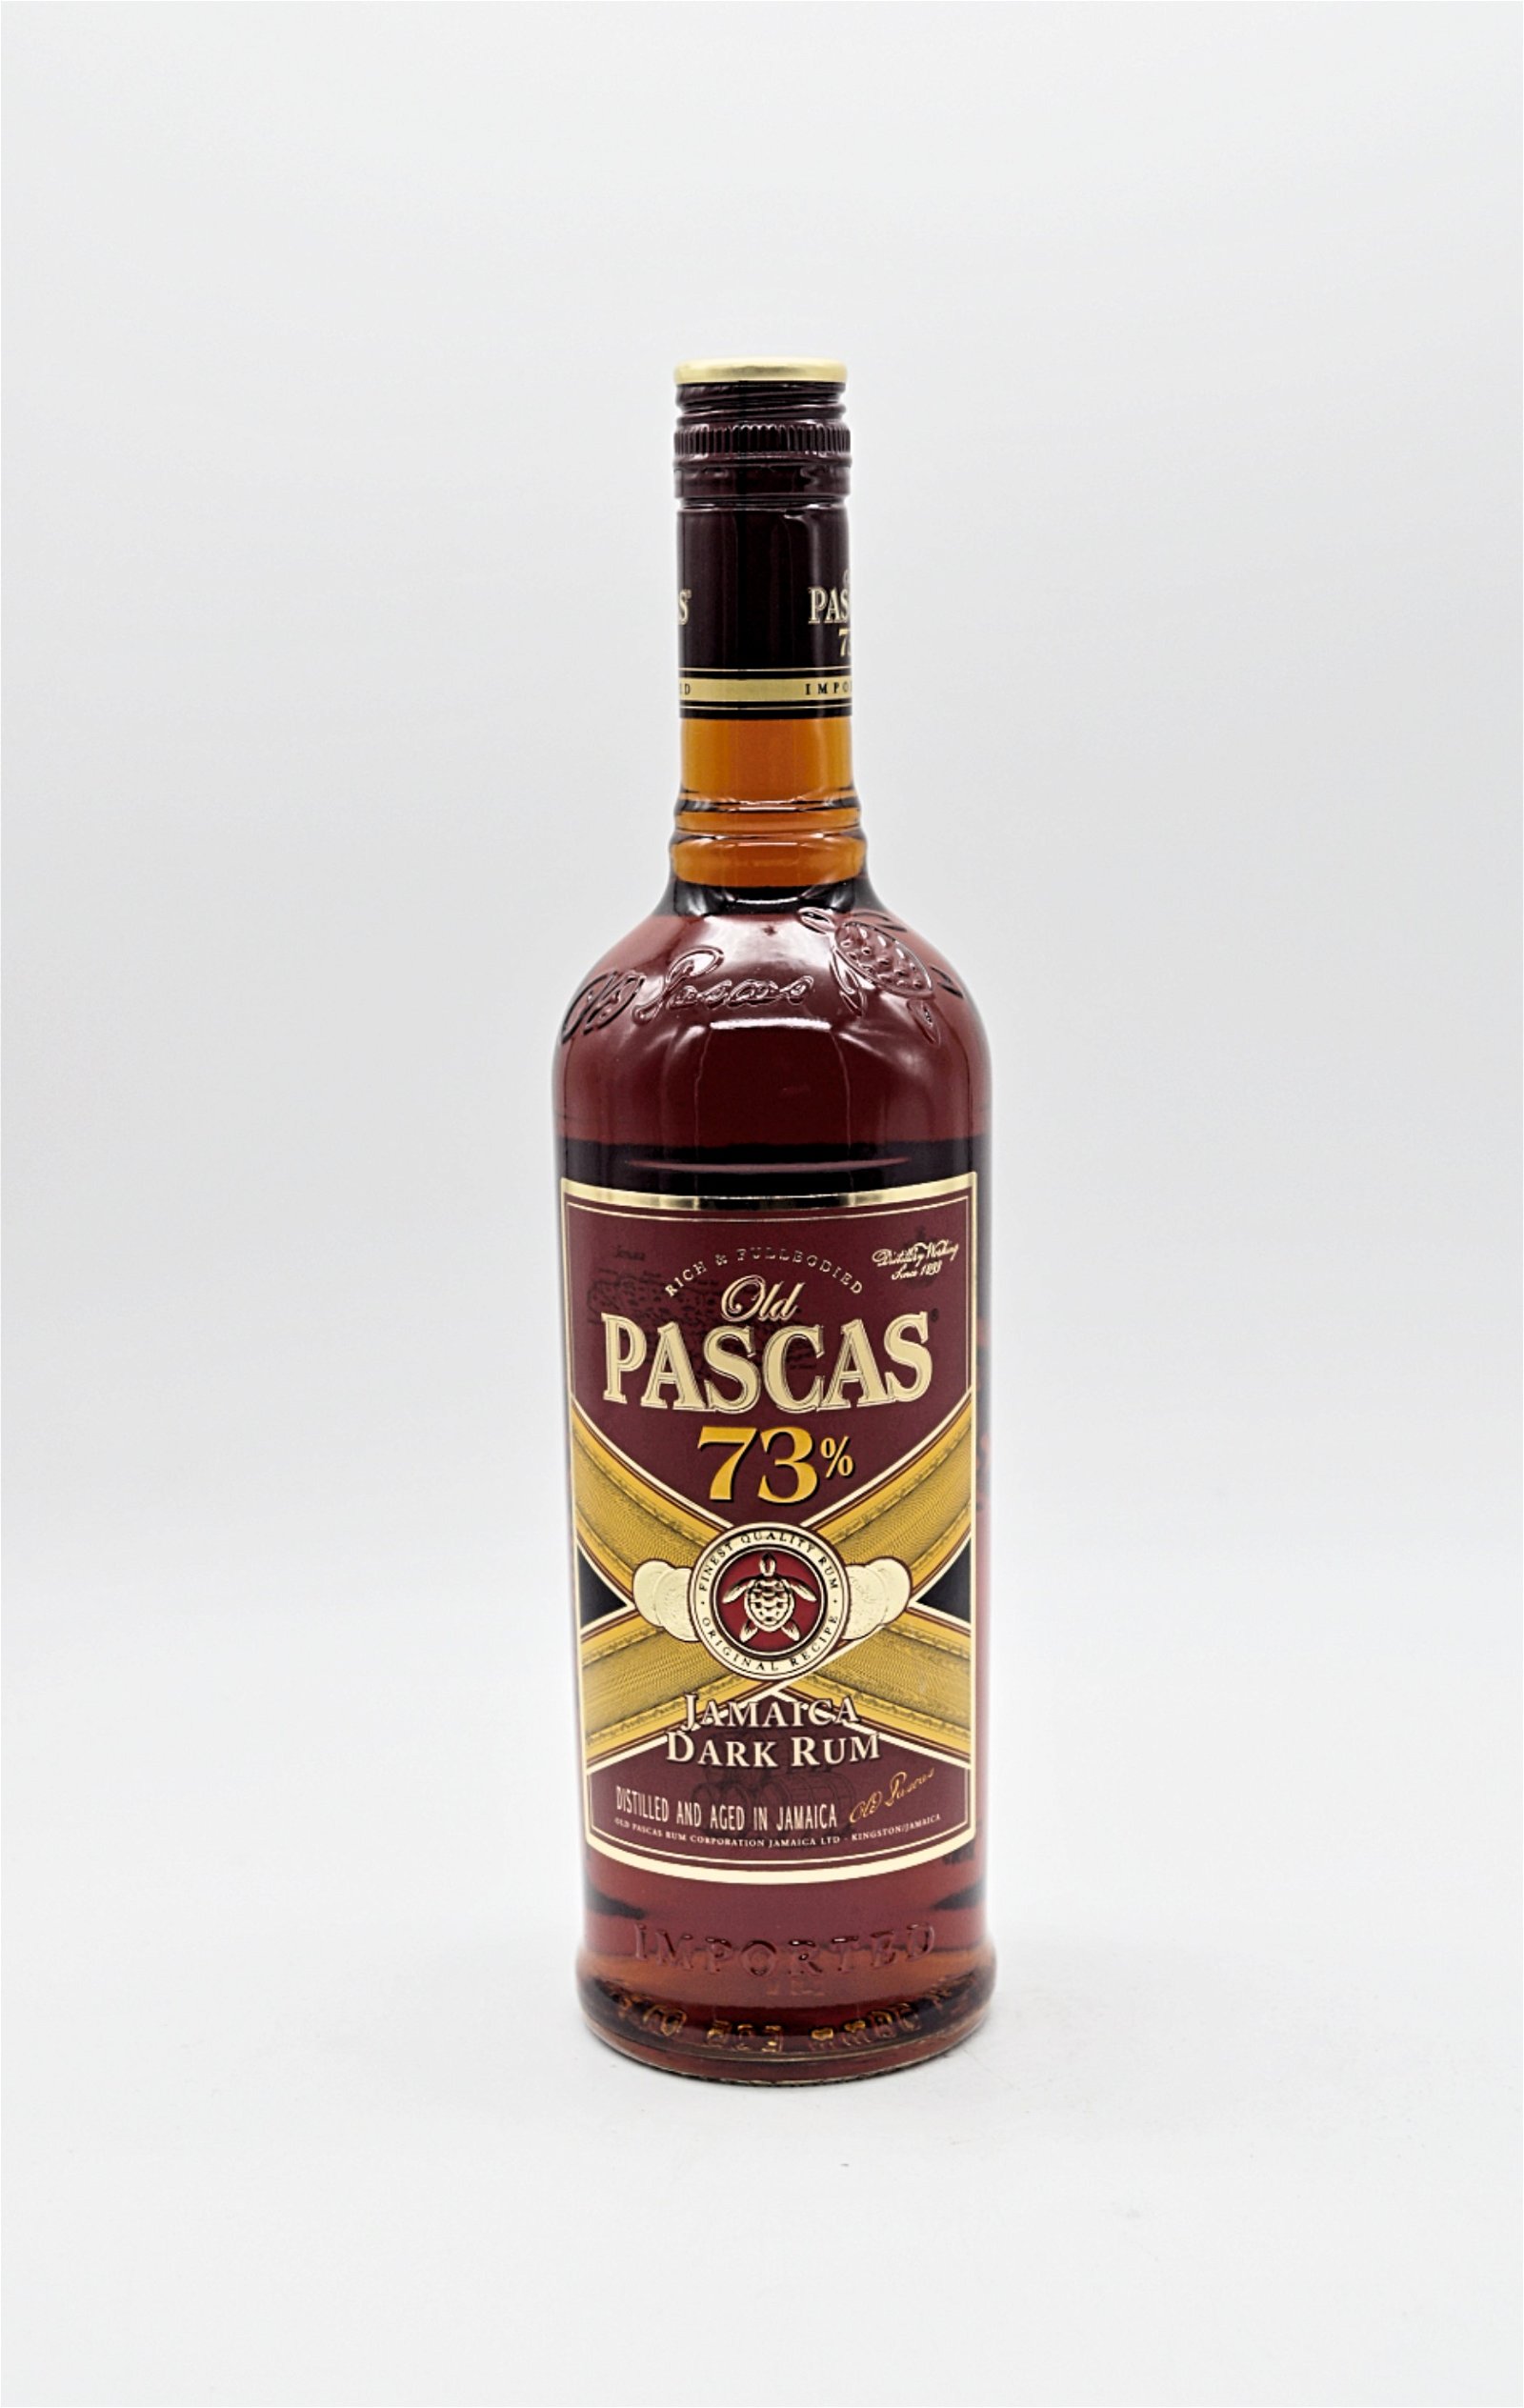 Old Pascas Jamaica Dark Rum 73%